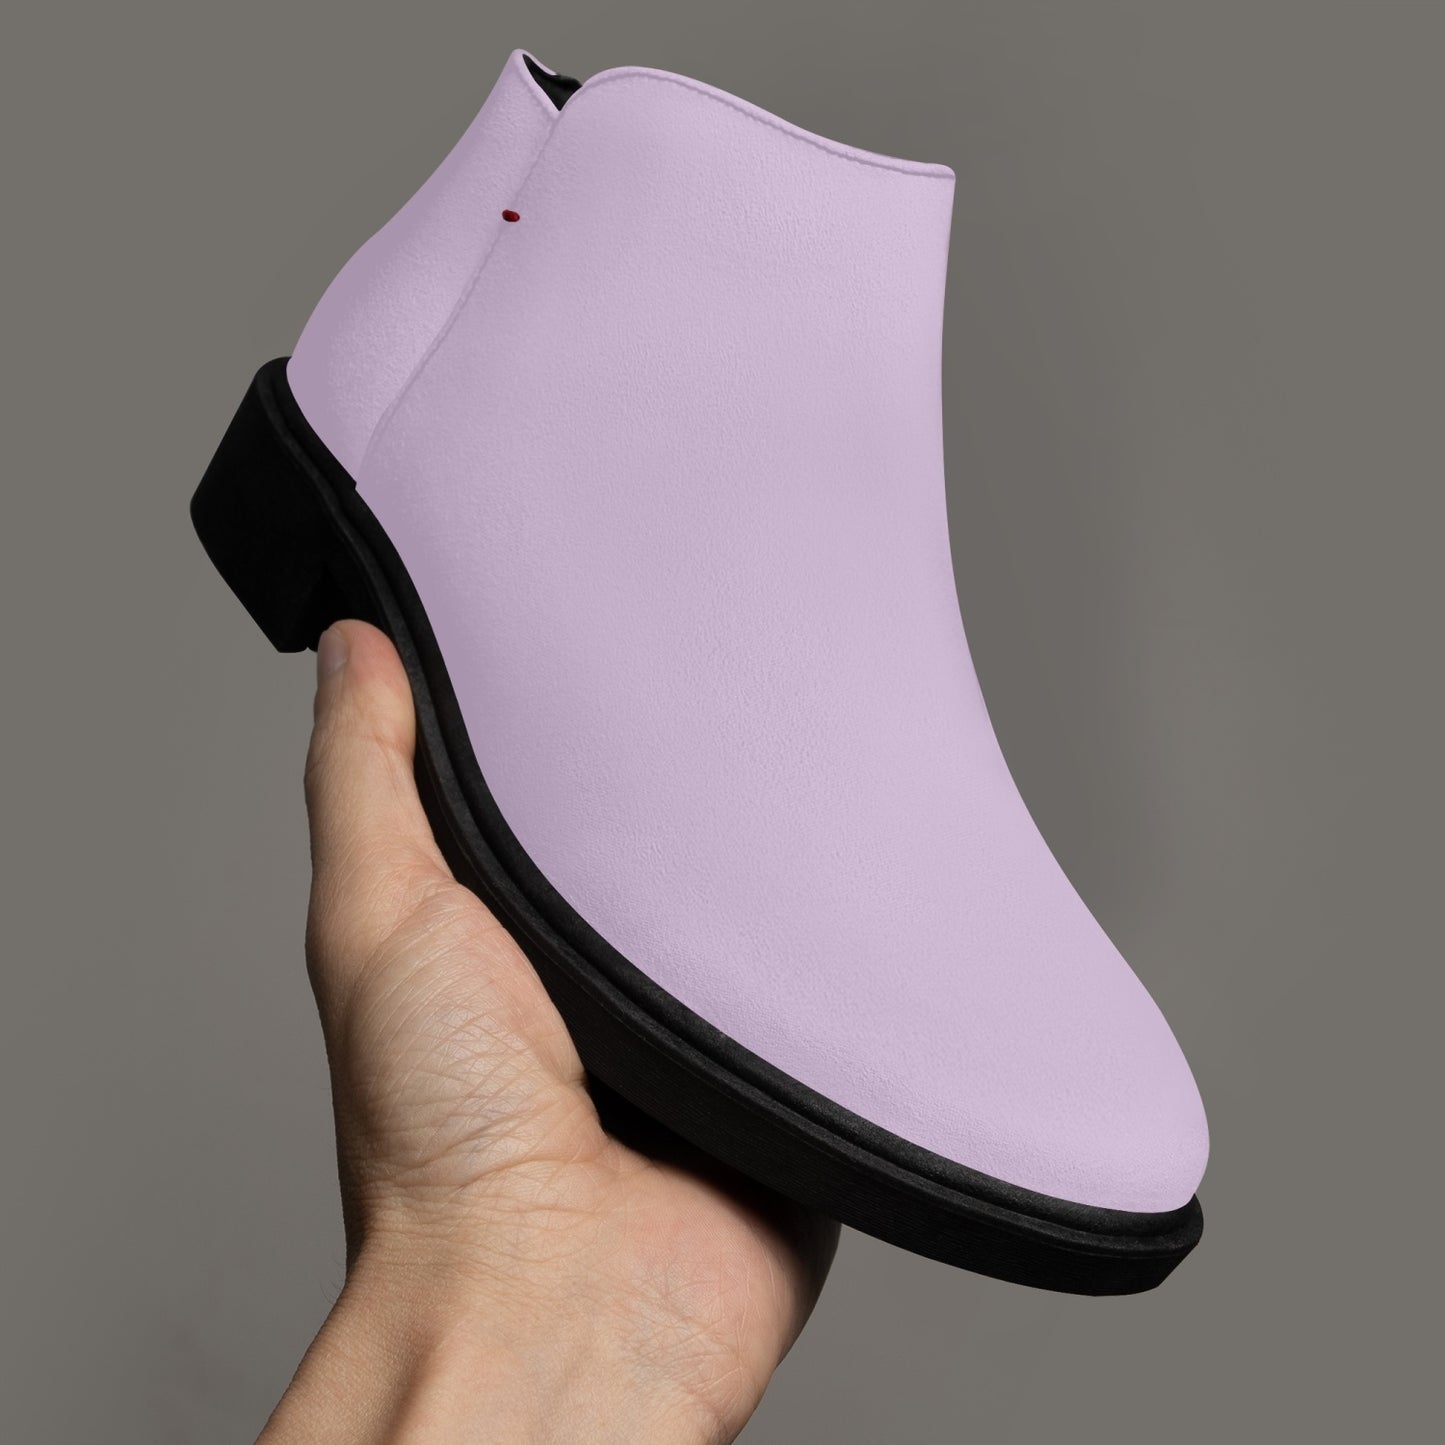 Pastel Lavender Zipper Unisex Suede Ankle Boots